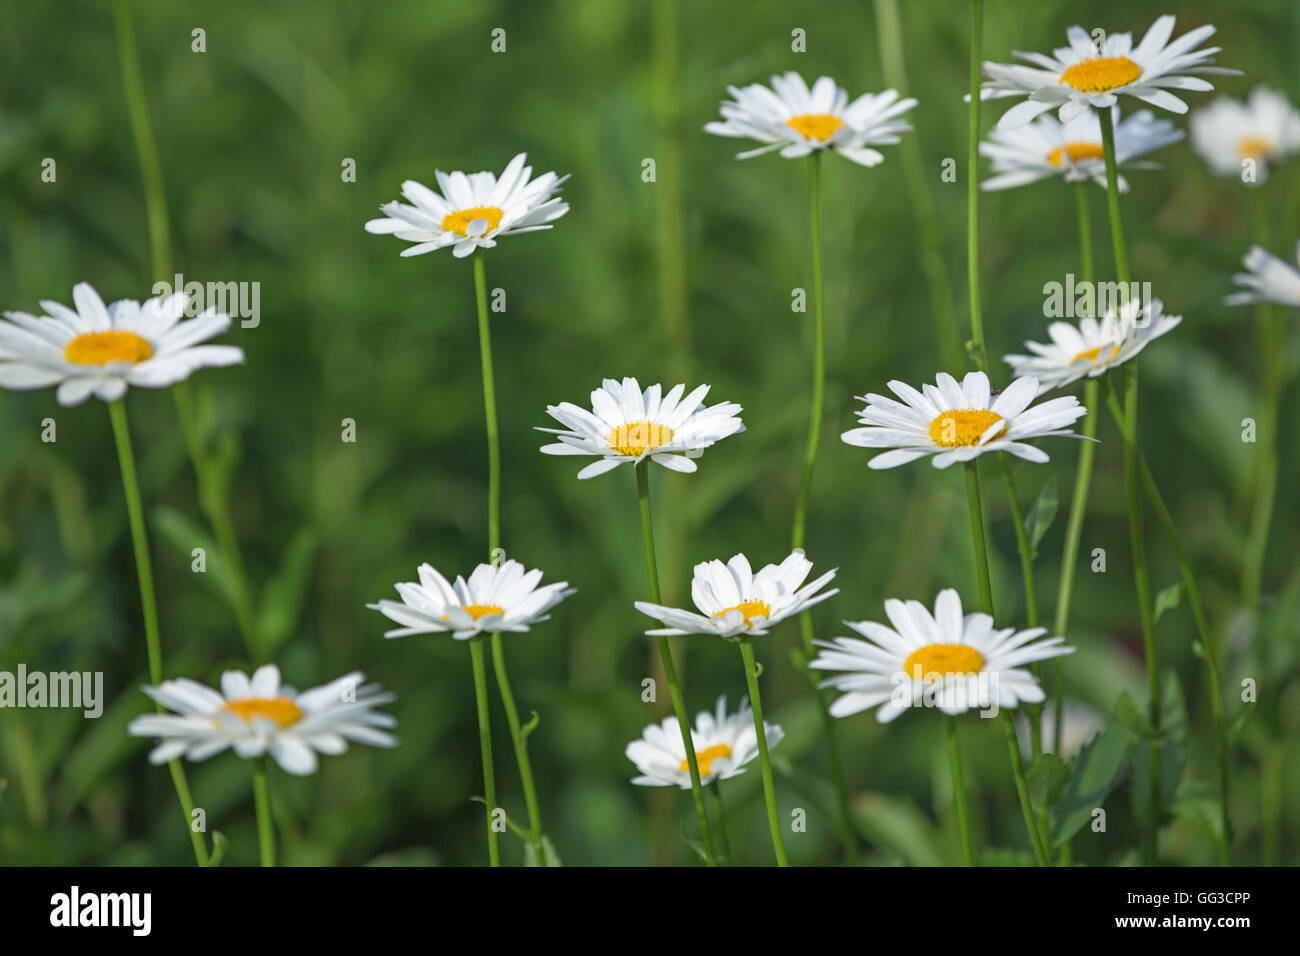 White Shasta daisy flowers Leucanthemum superbum Stock Photo